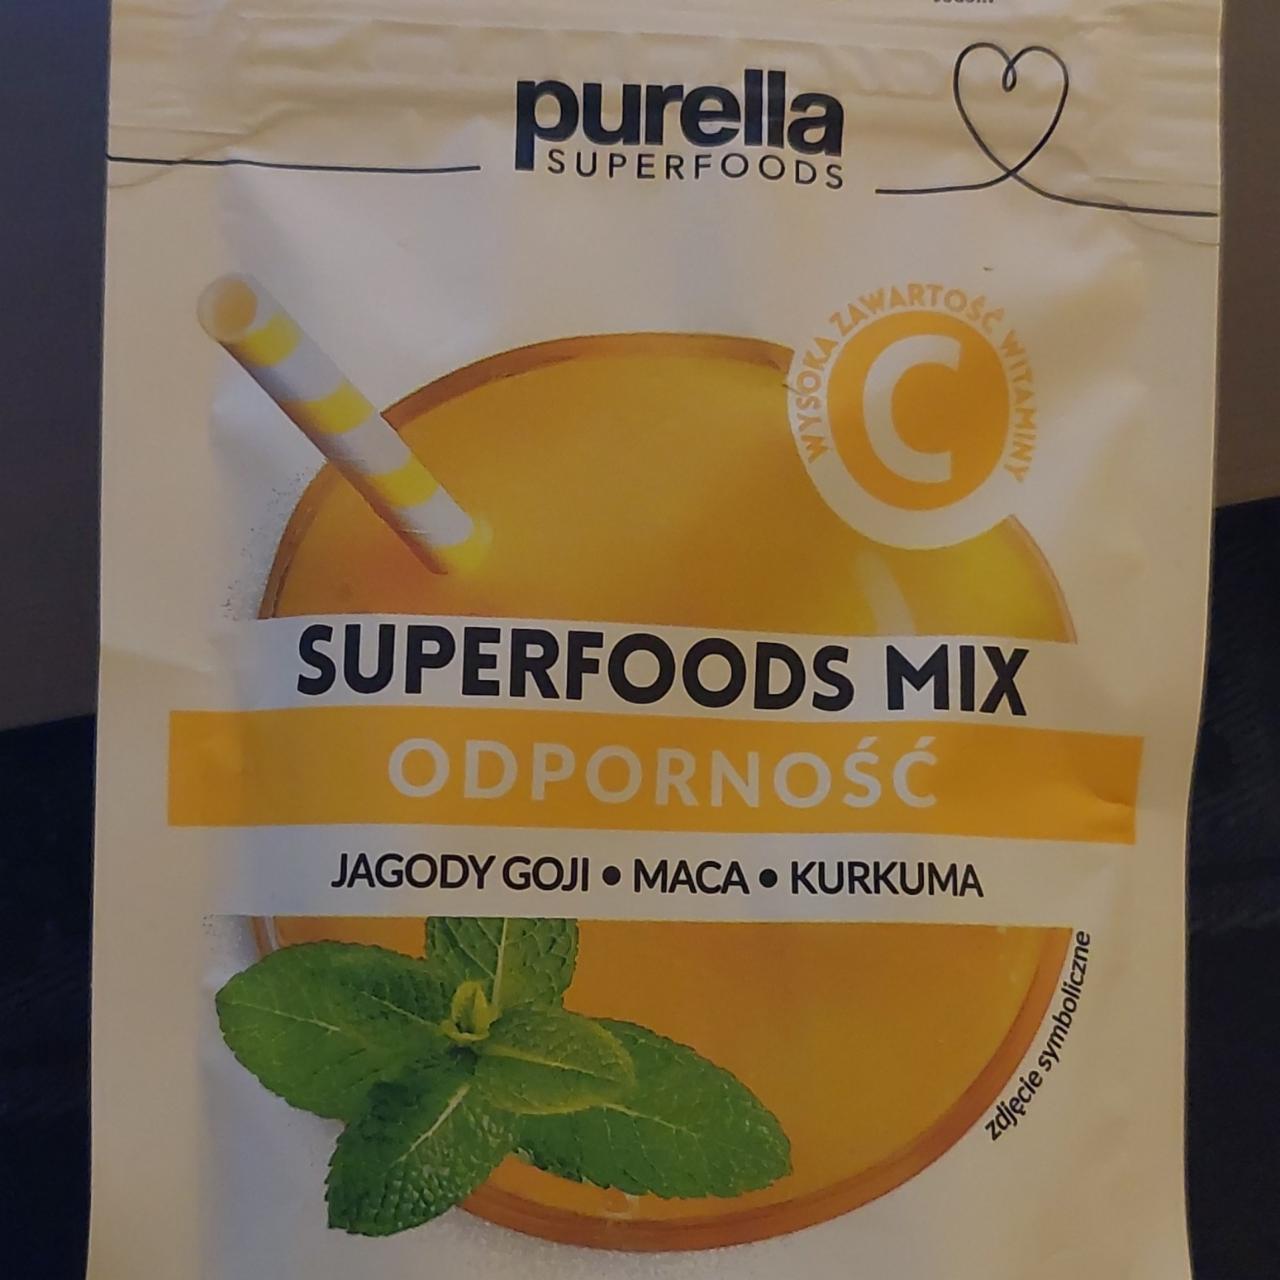 Zdjęcia - Superfoods Mix Odporność Purella Superfoods